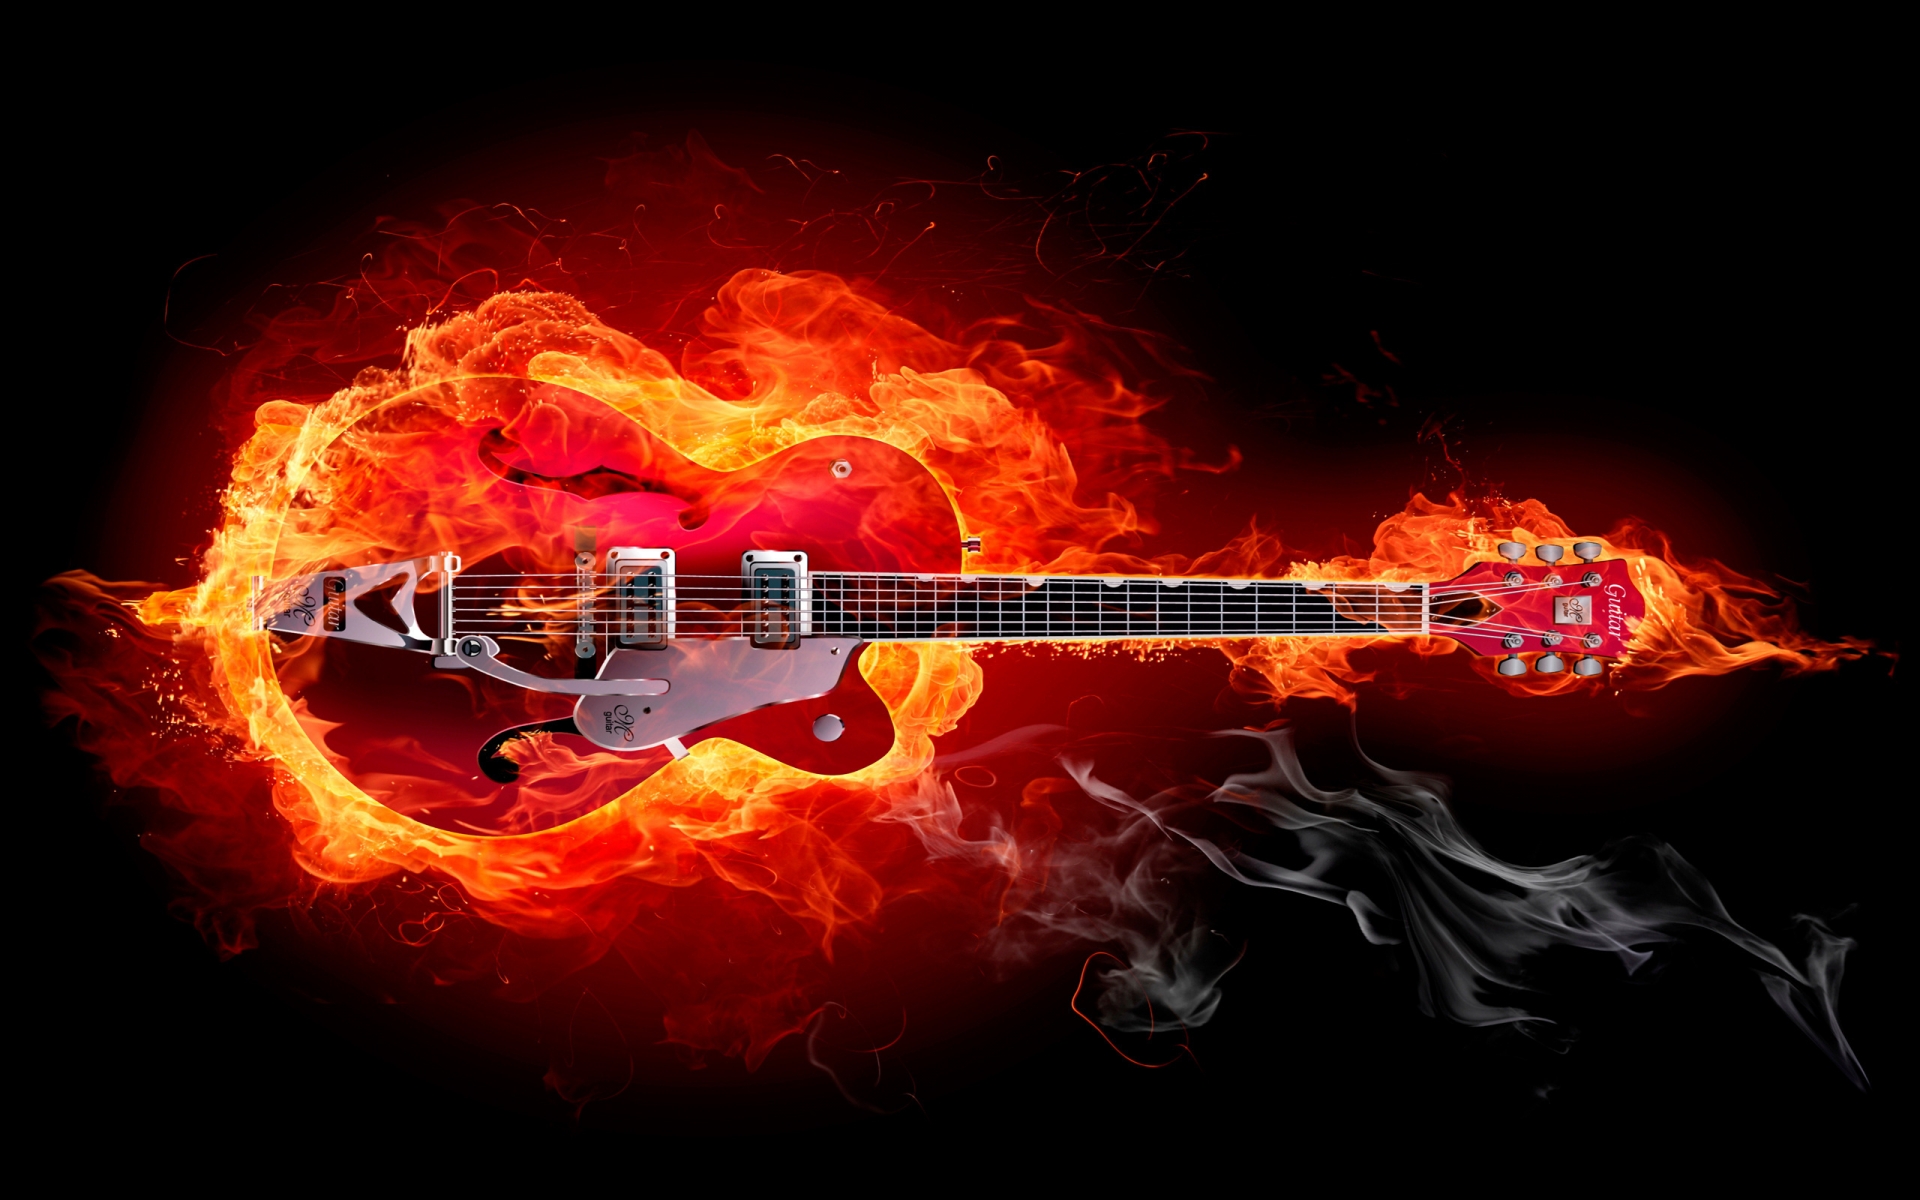 Fire Guitar for 1920 x 1200 widescreen resolution